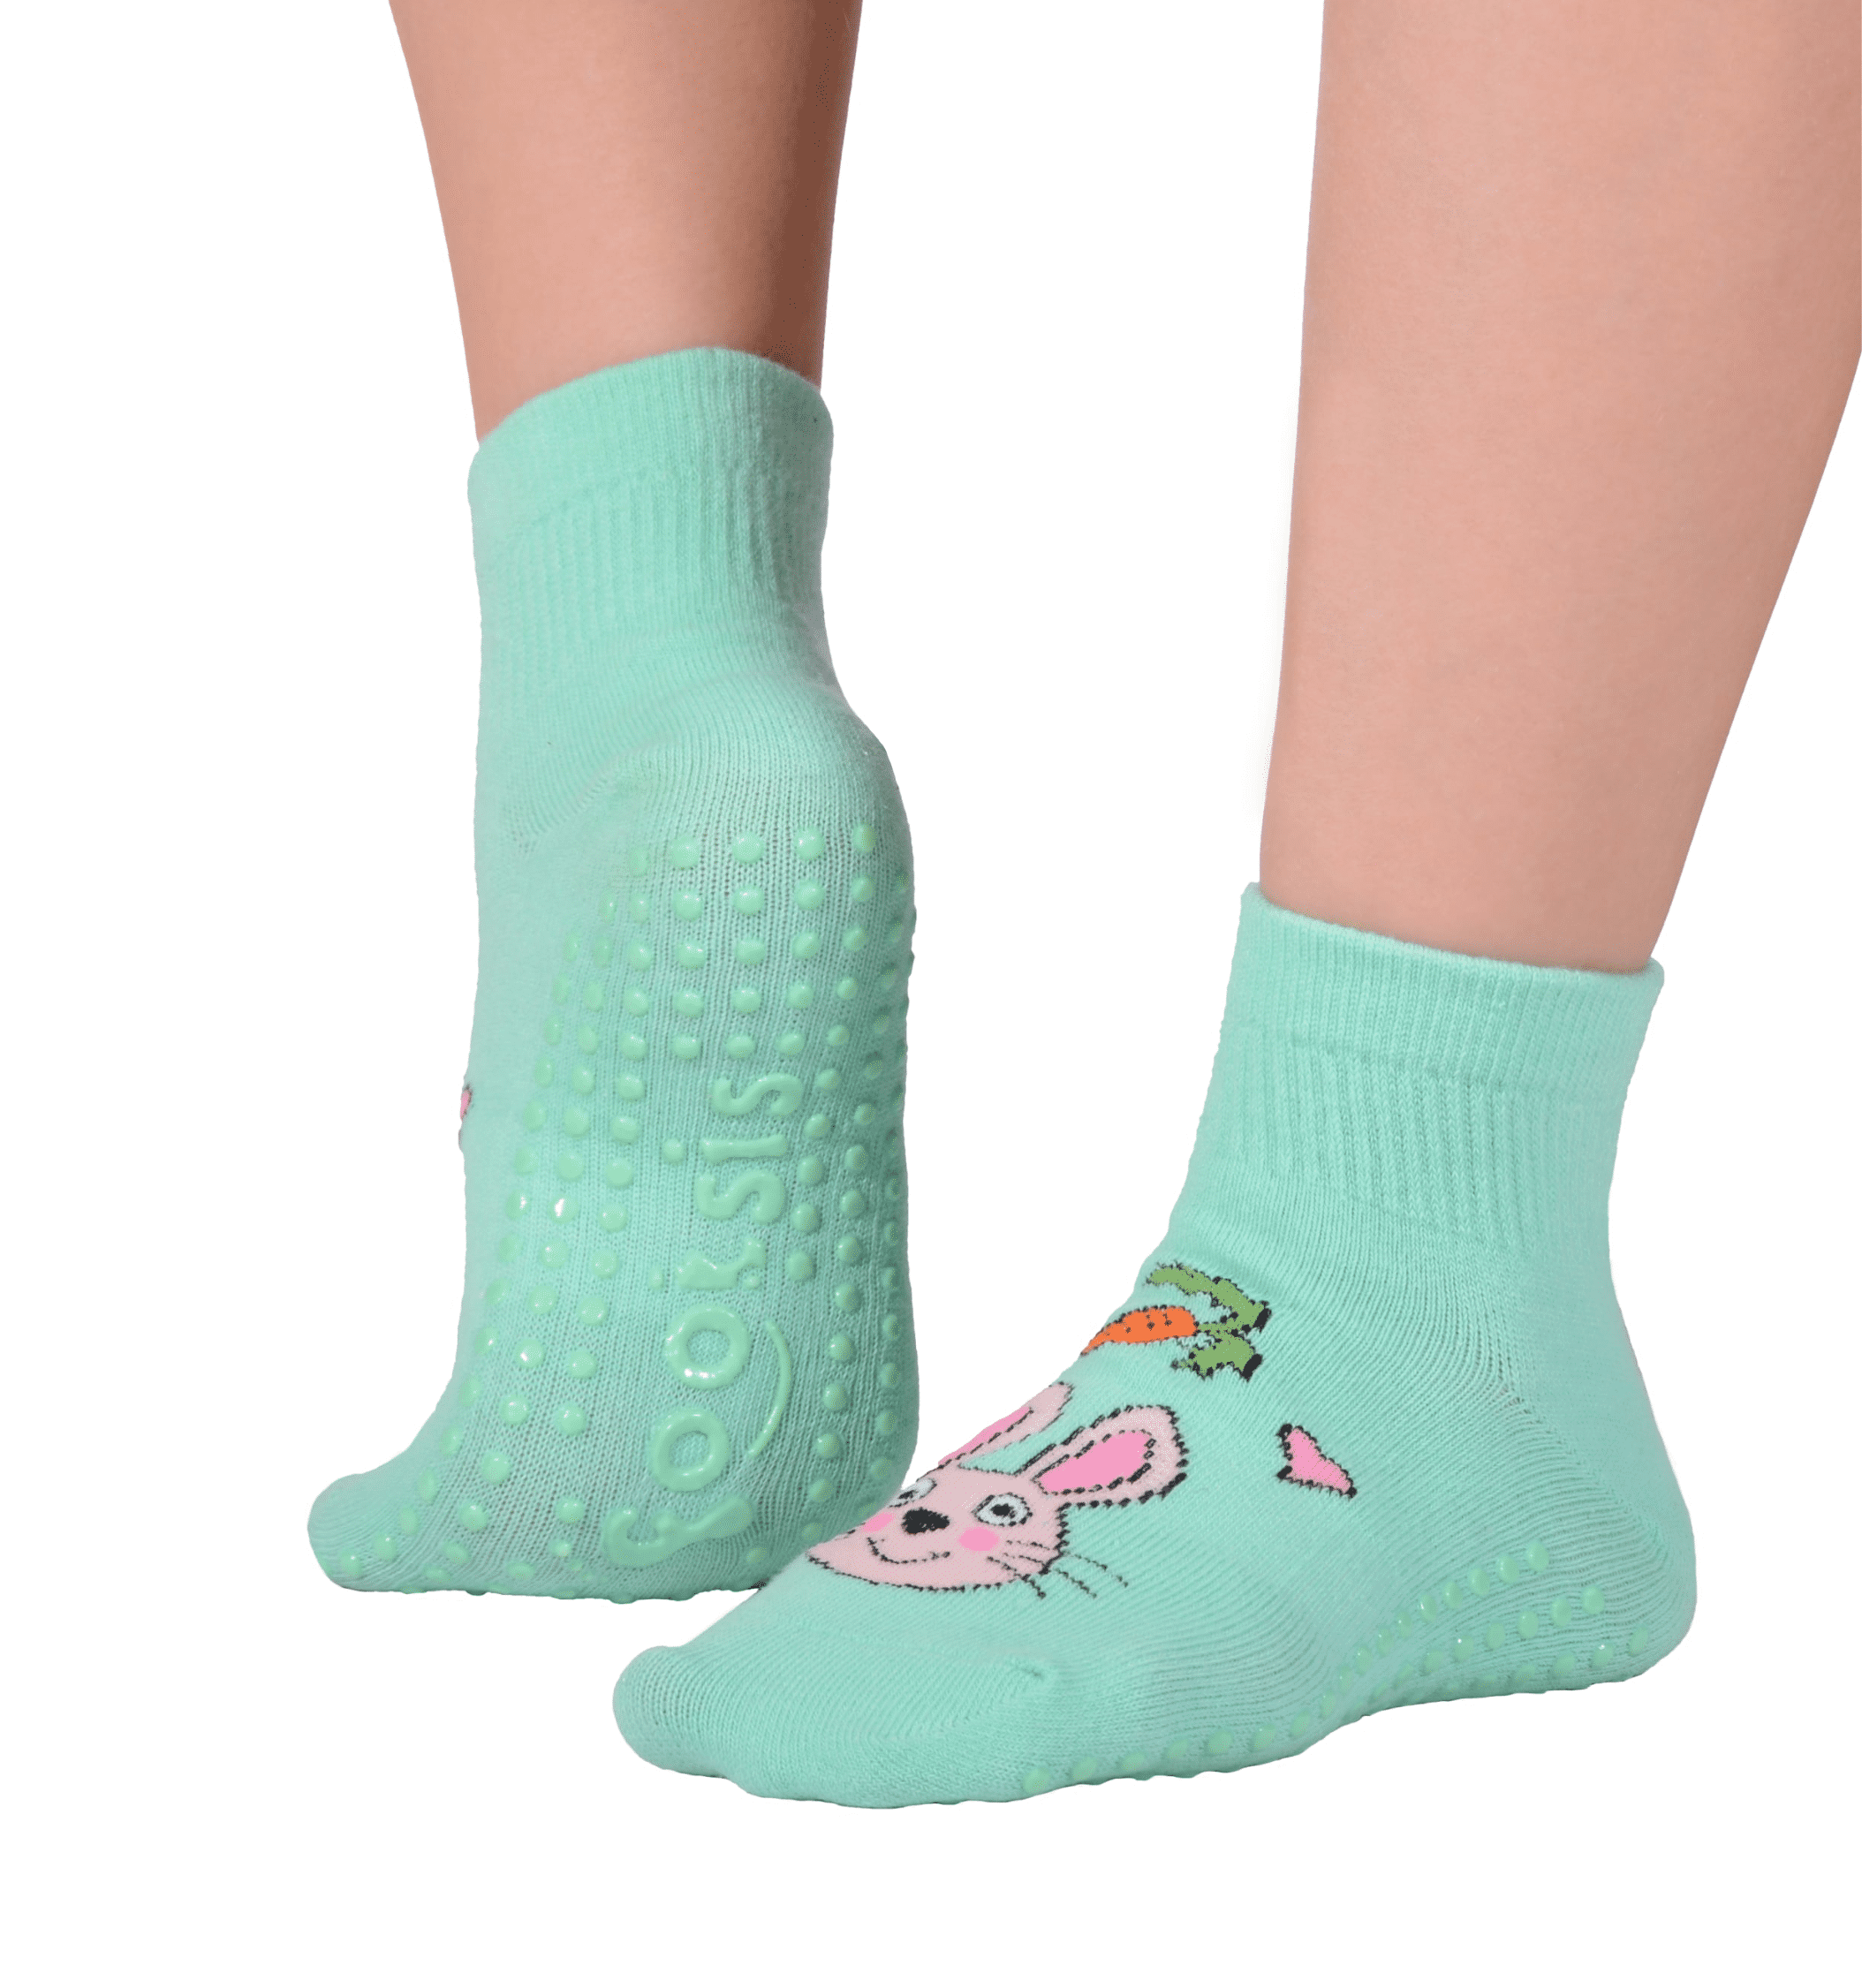 Non Slip Yoga Socks for Women Non Skid with Grips Socks for Yoga Home /& Hospital 4 Pack Barre Pilates